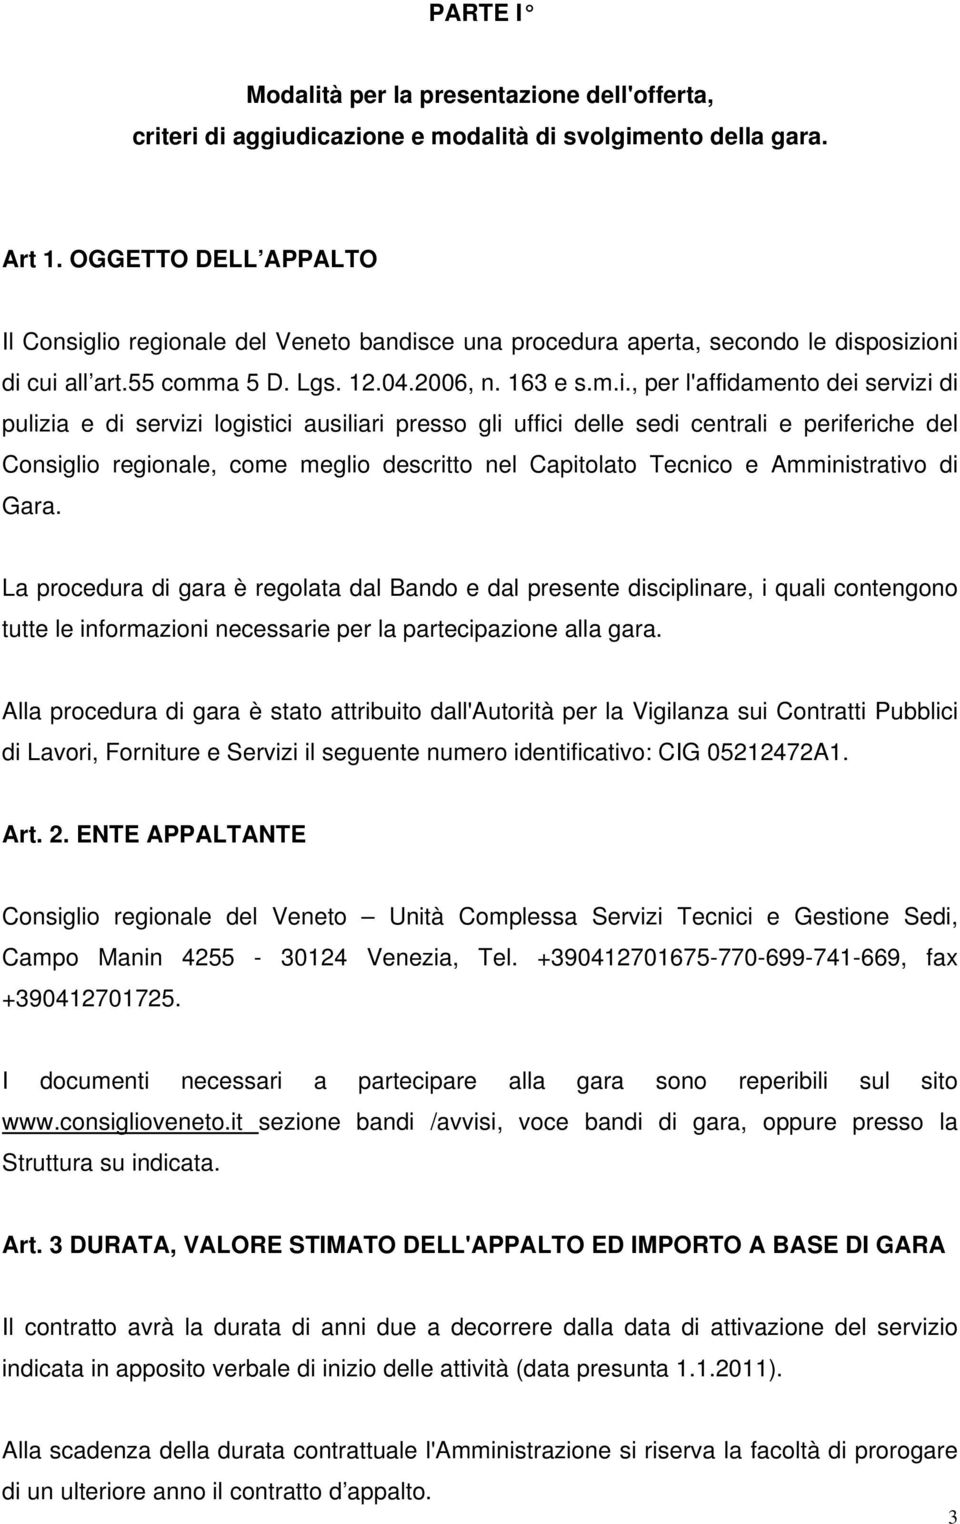 lio regionale del Veneto bandisce una procedura aperta, secondo le disposizioni di cui all art.55 comma 5 D. Lgs. 12.04.2006, n. 163 e s.m.i., per l'affidamento dei servizi di pulizia e di servizi